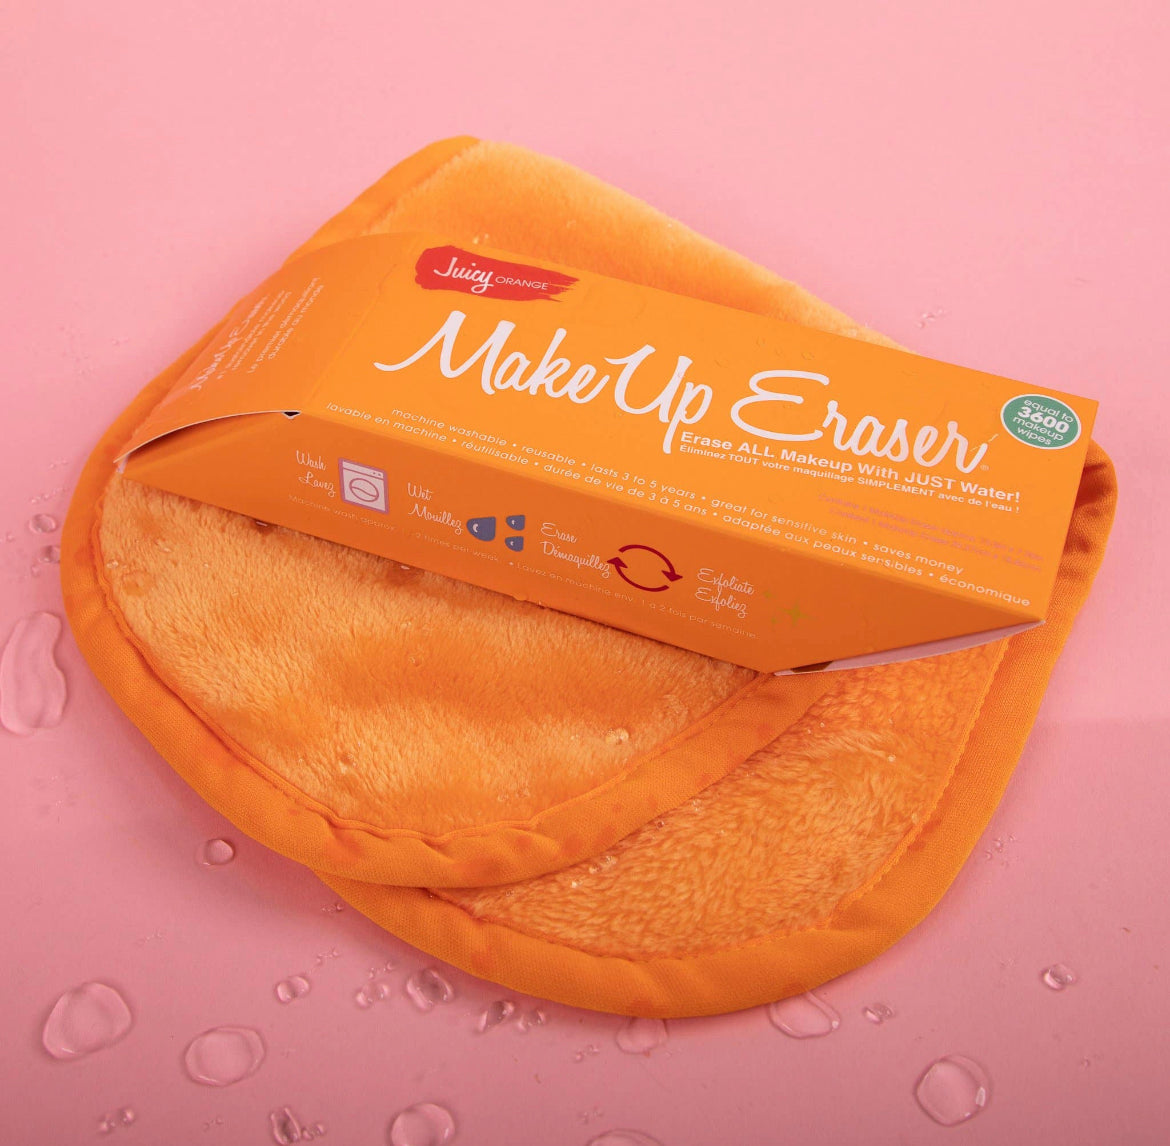 Makeup Eraser Juicy Orange